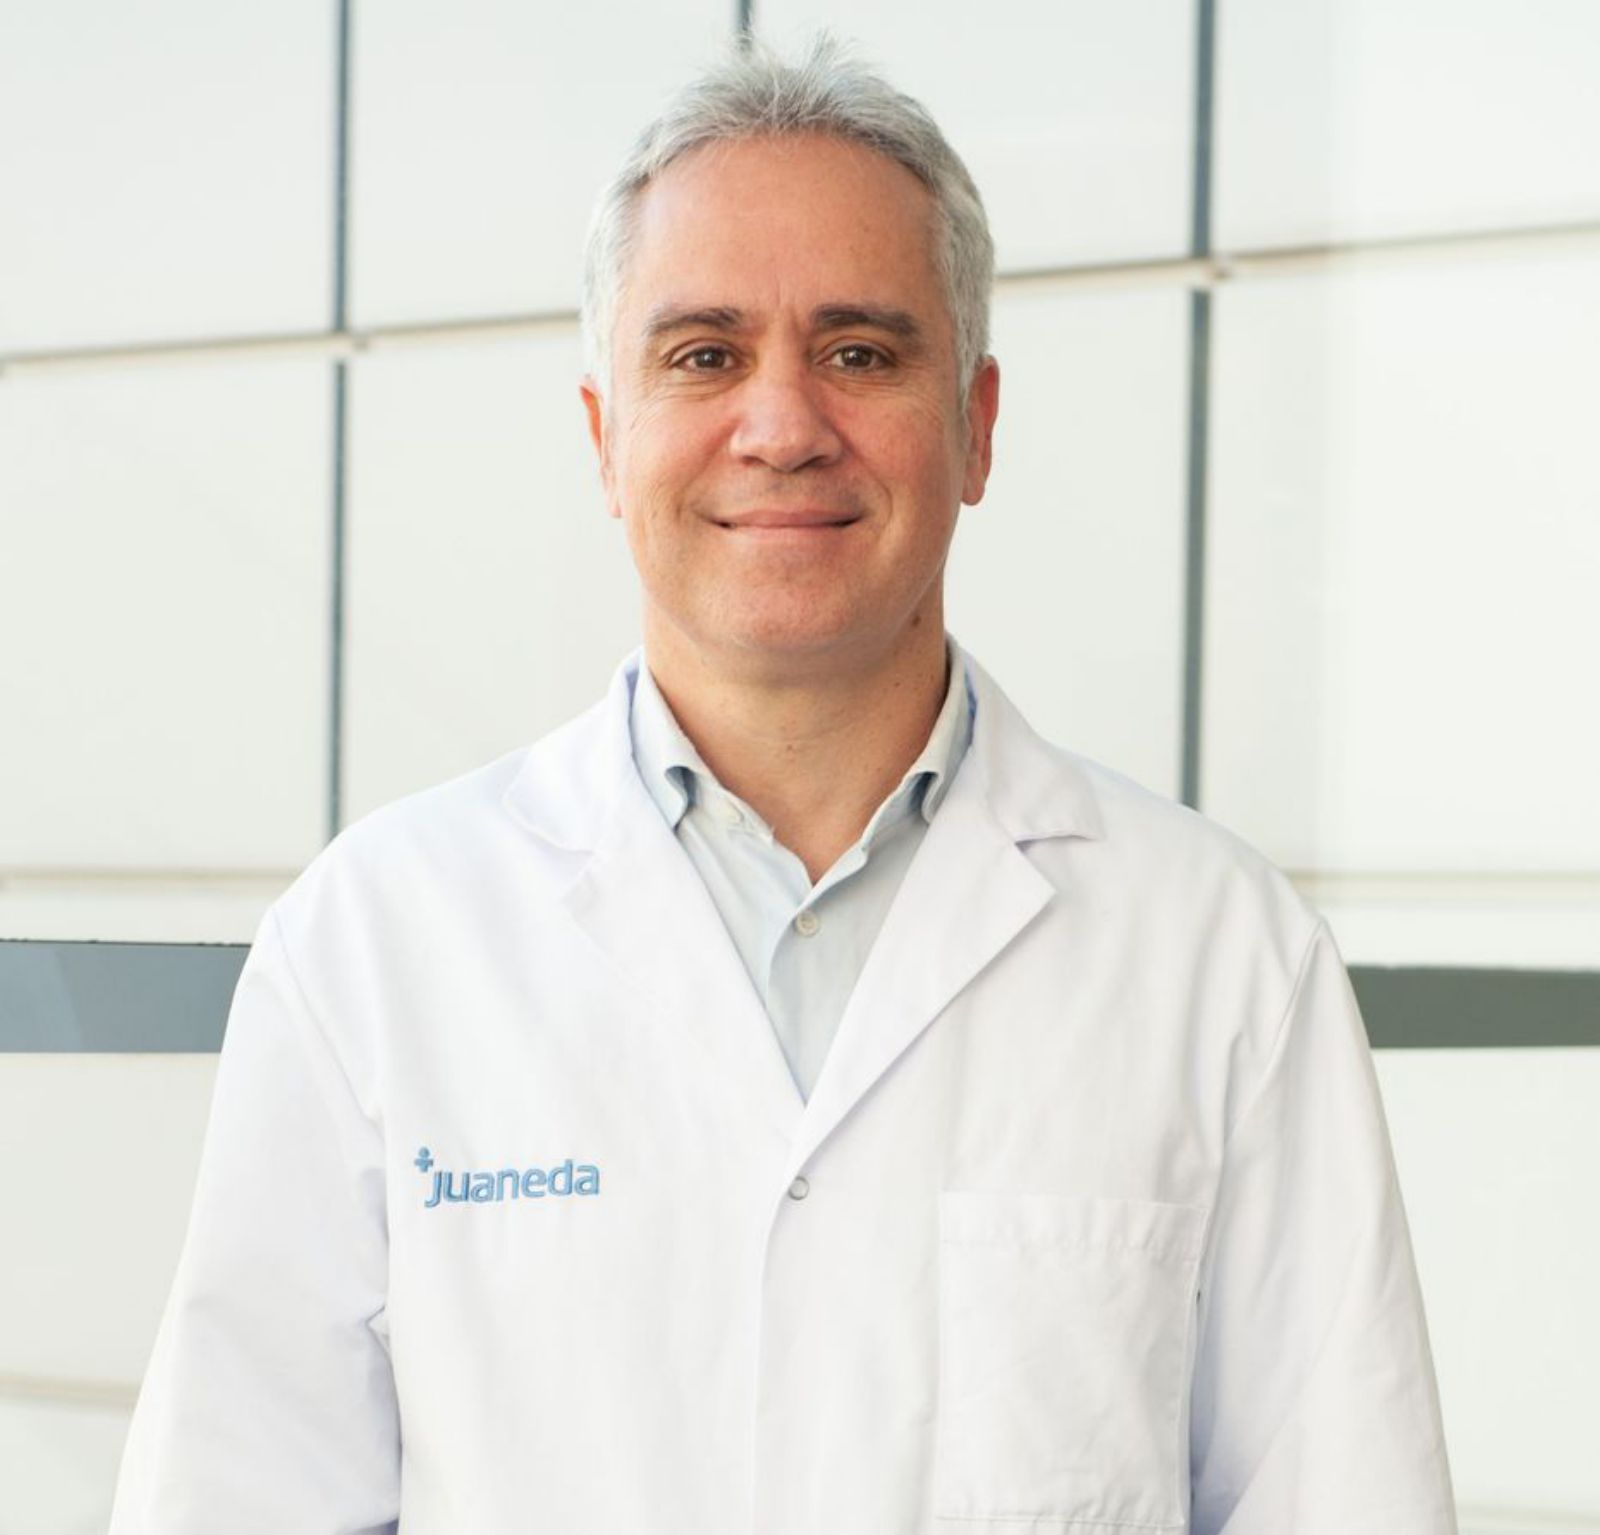 El doctor Rubén Vergara, especialista en Cardiología Intervencionista del grupo sanitario privado Juaneda Hospitales.